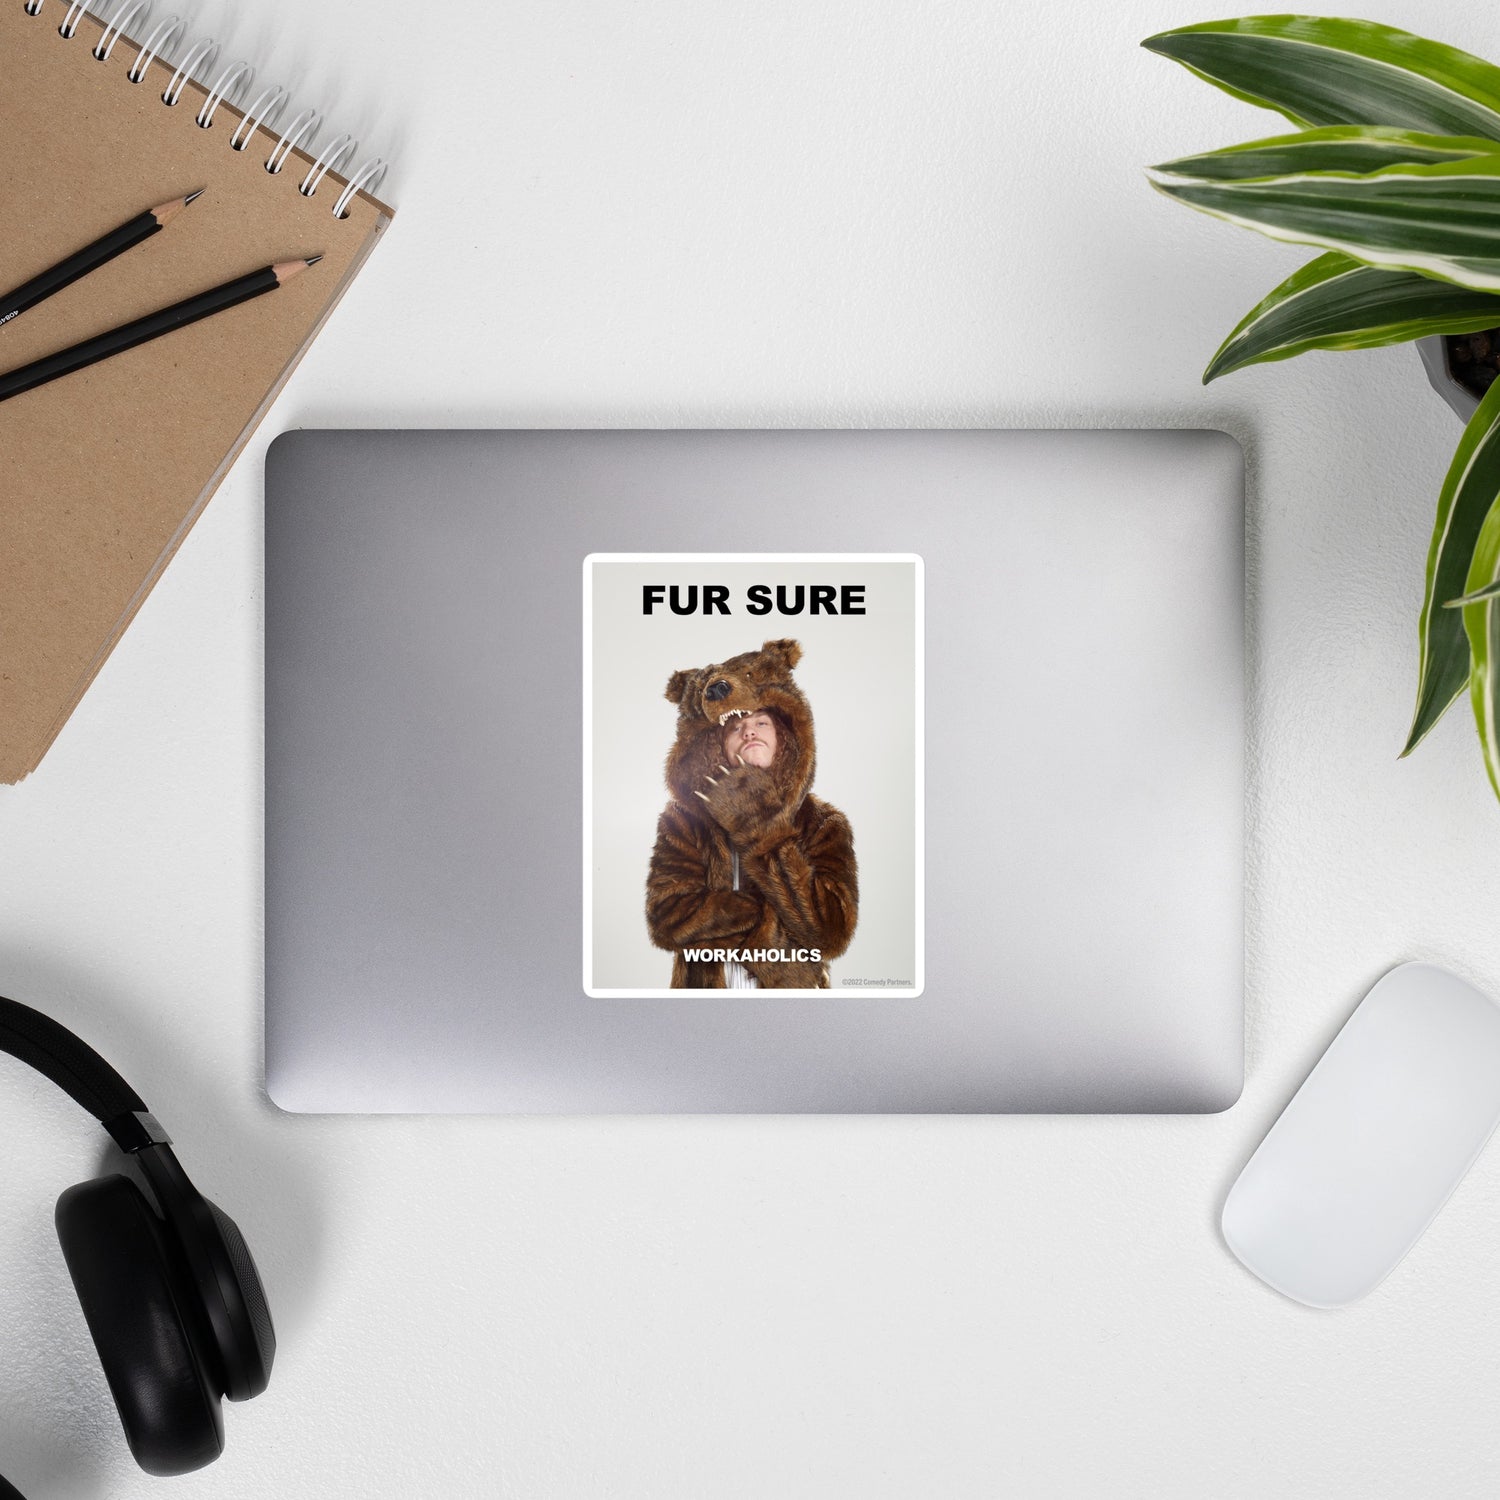 Workaholics "Fur Sure" Die Cut Sticker